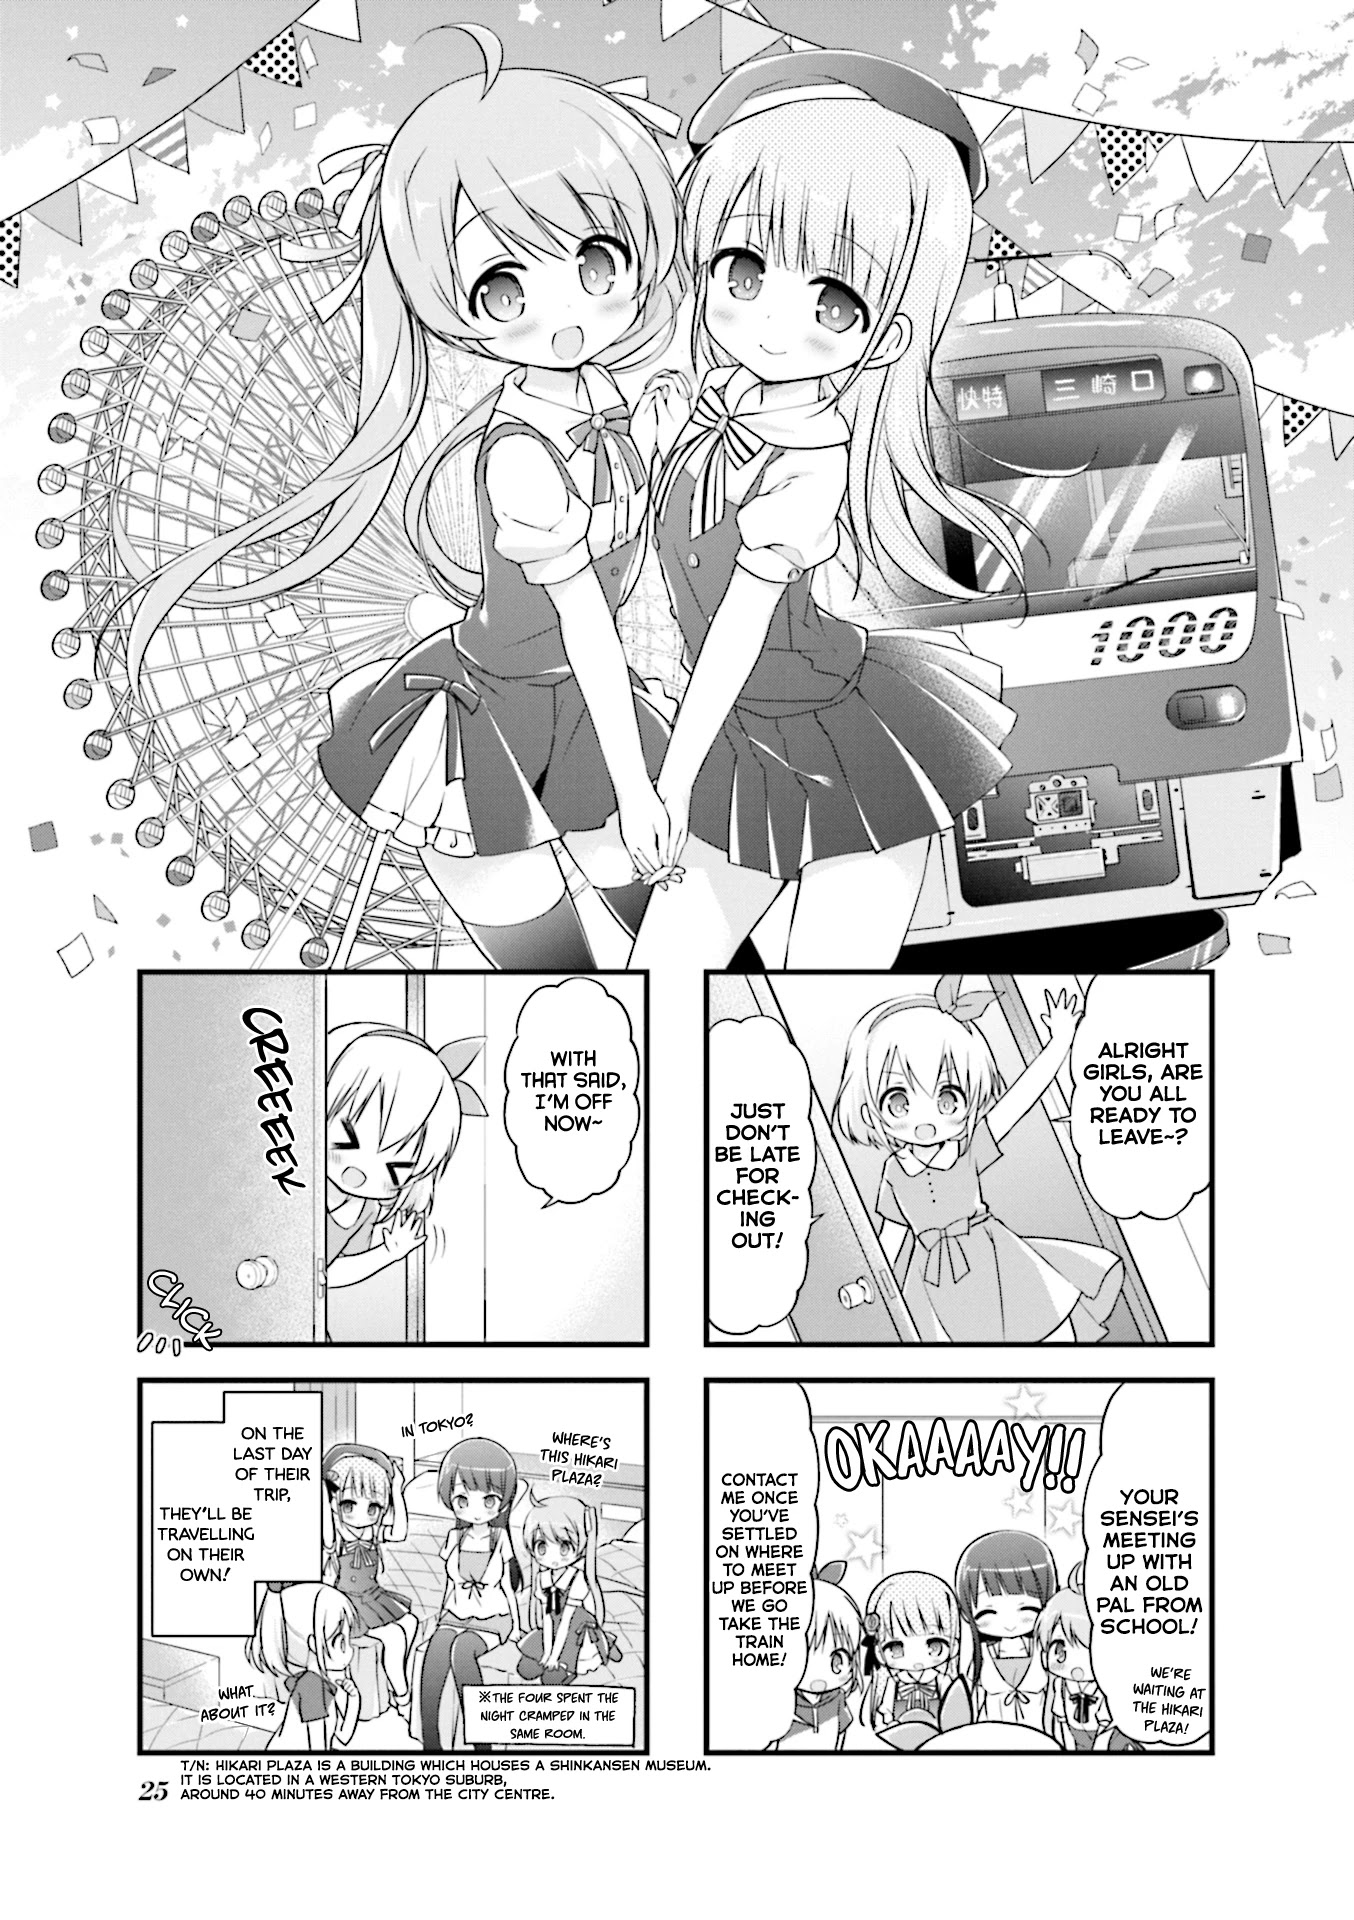 Hatsukoi*rail Trip - Page 1